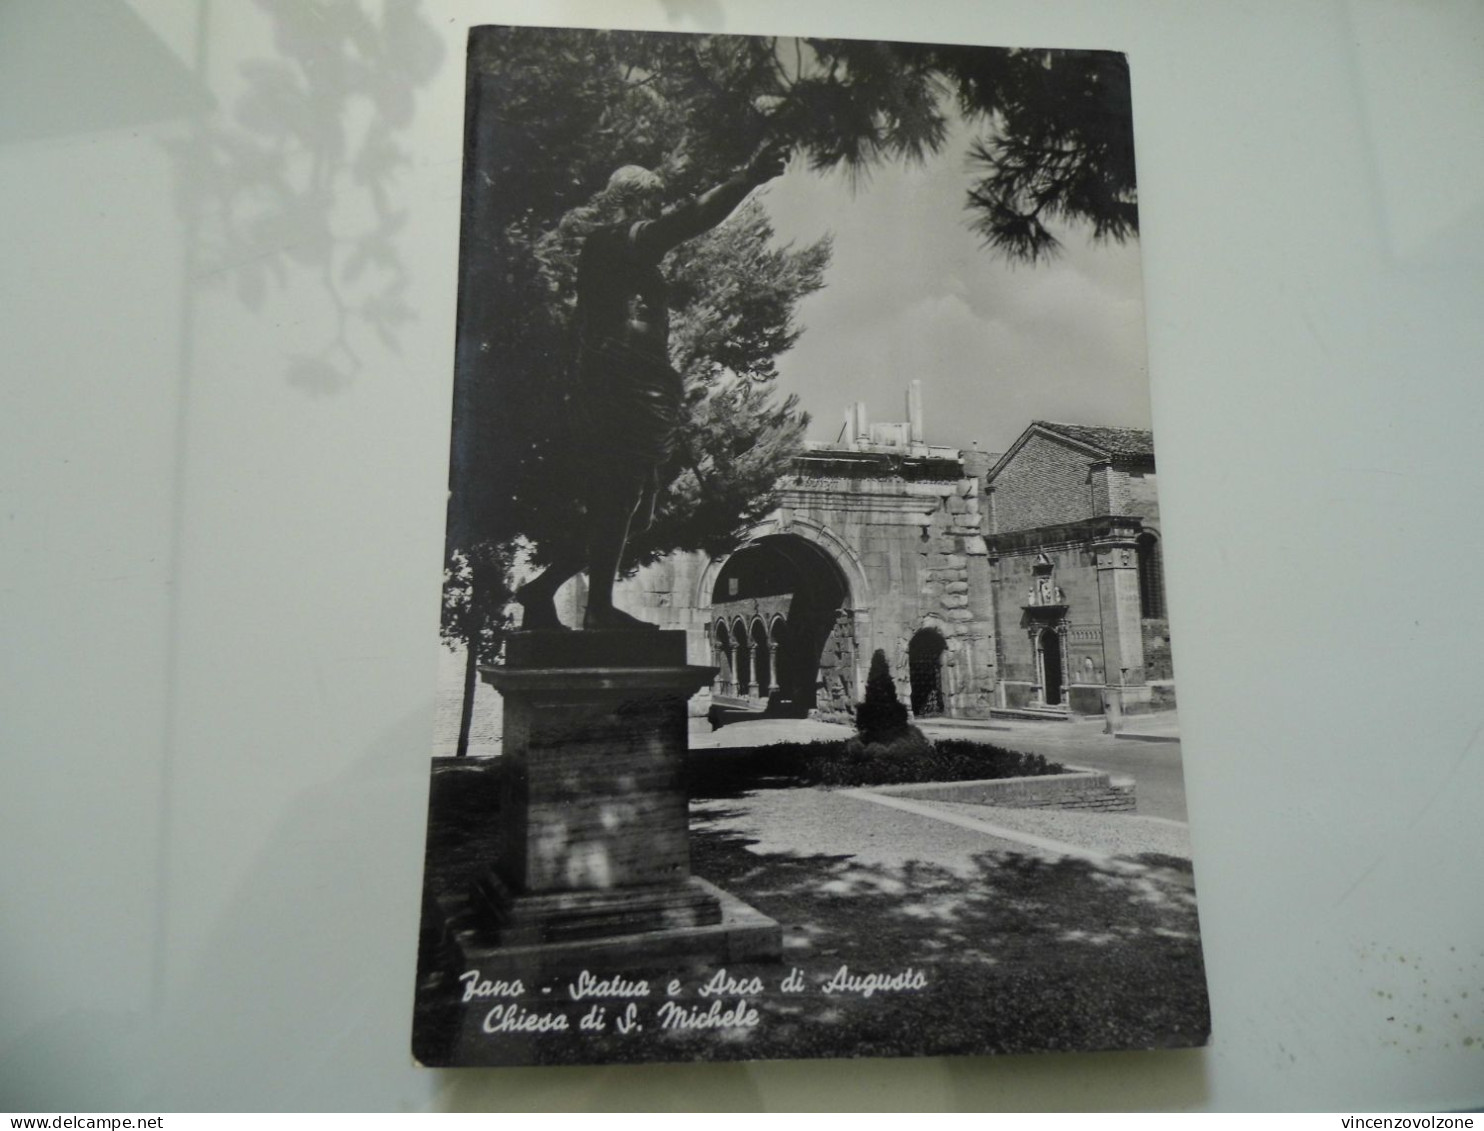 Cartolina Viaggiata "FANO Statua E Arco Dii Augusto - Chiesa Di S. Michele" 1953 - Fano